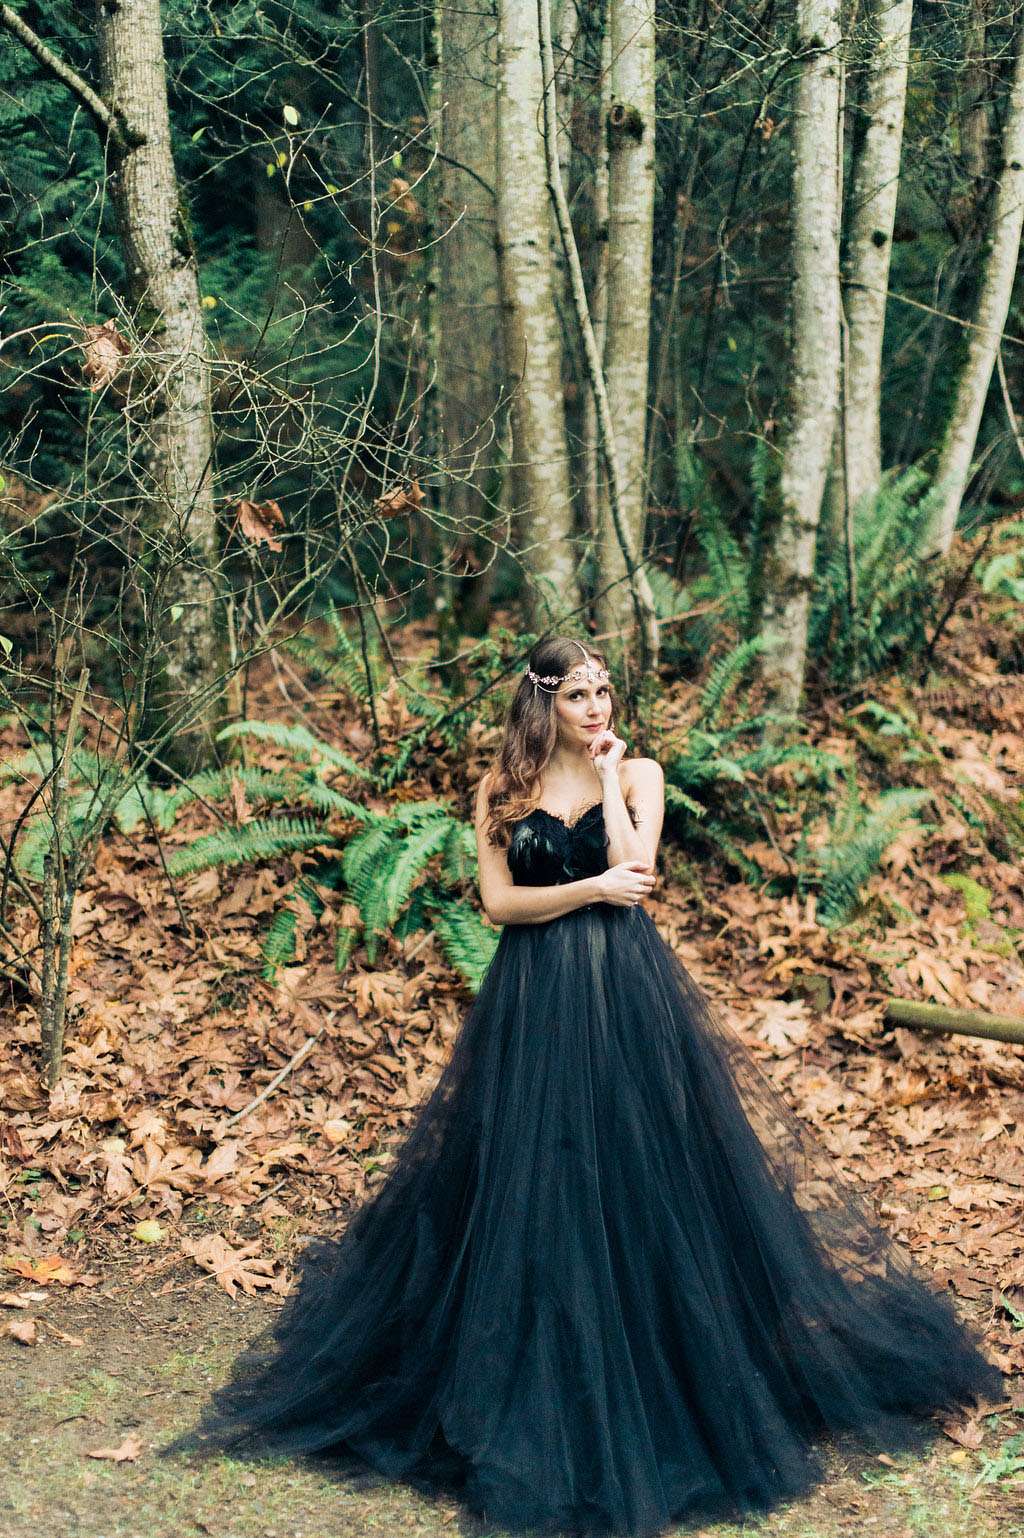 Woodland Nymph in a Black Wedding Dress · Rock n Roll Bride